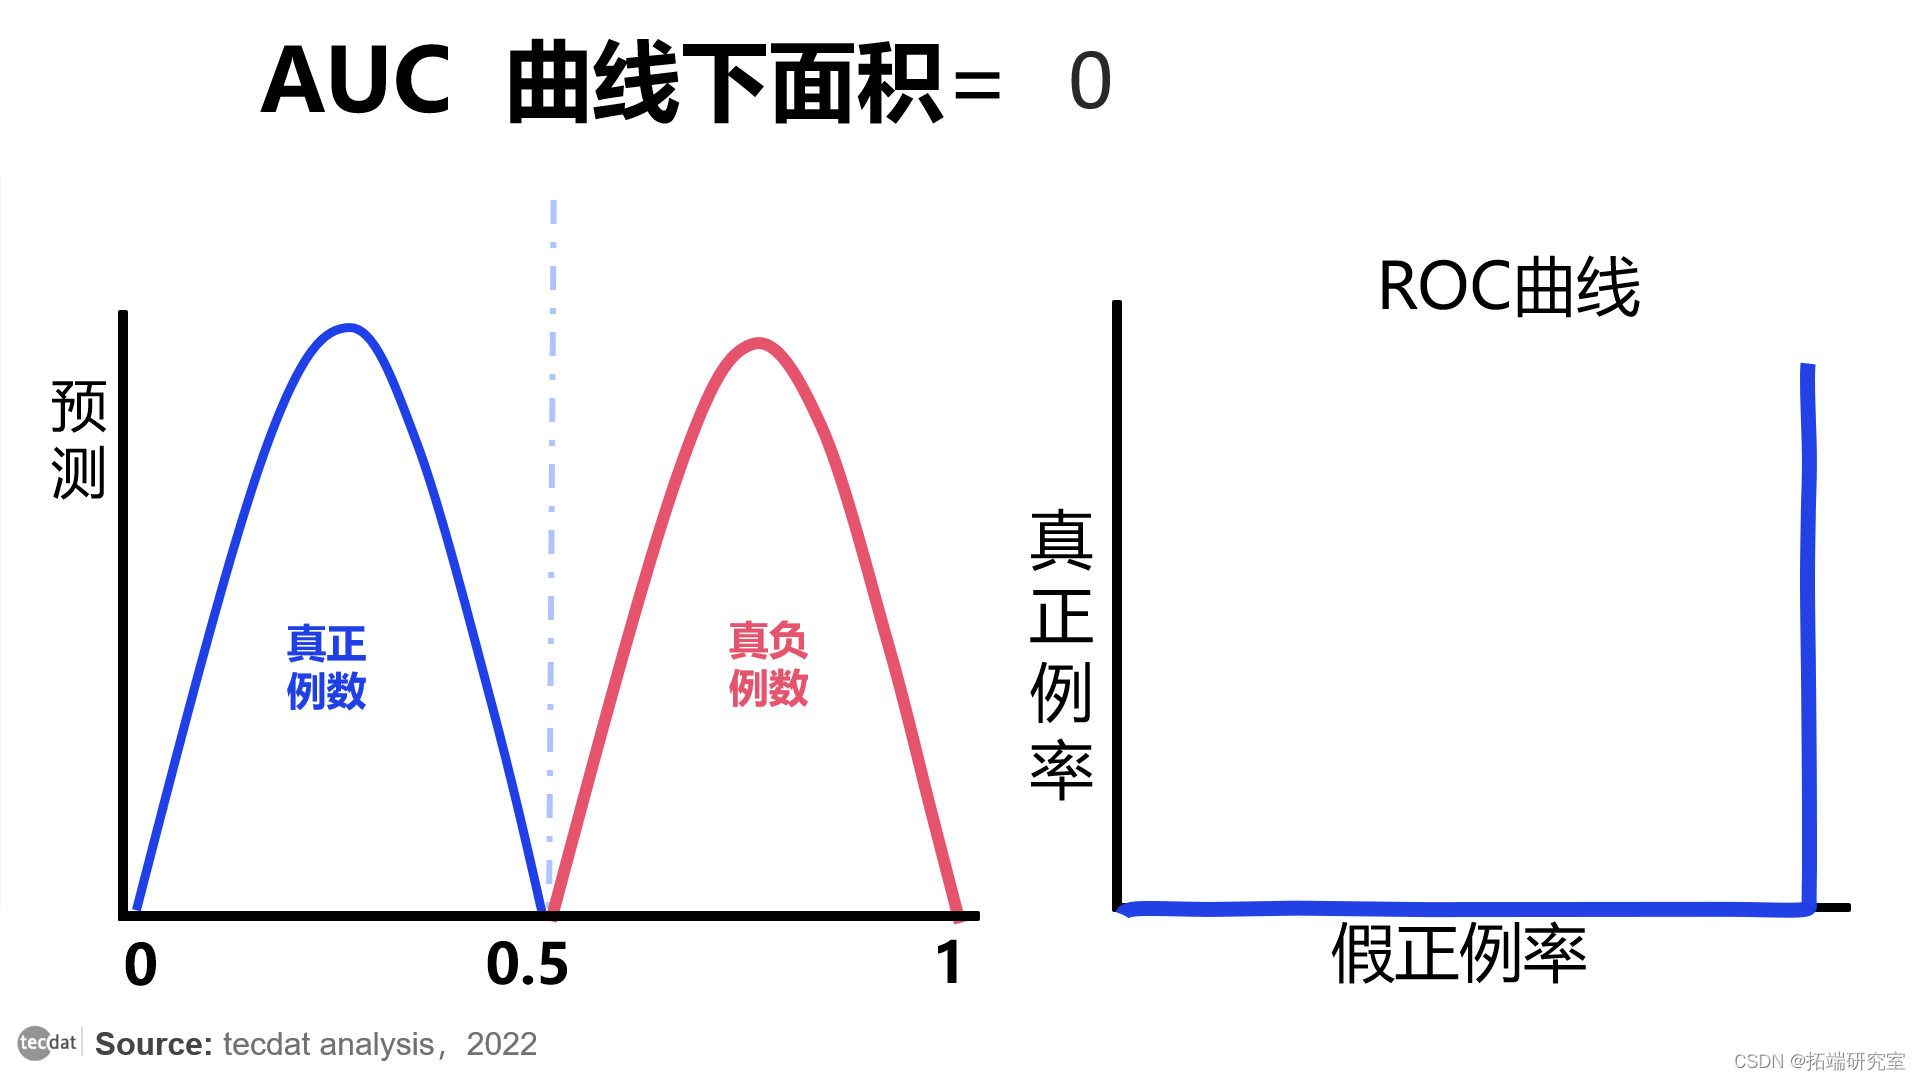 视频|分类模型评估:精确率、召回率、ROC曲线、AUC与R语言生存分析时间依赖性ROC实现|附代码数据_ML_09